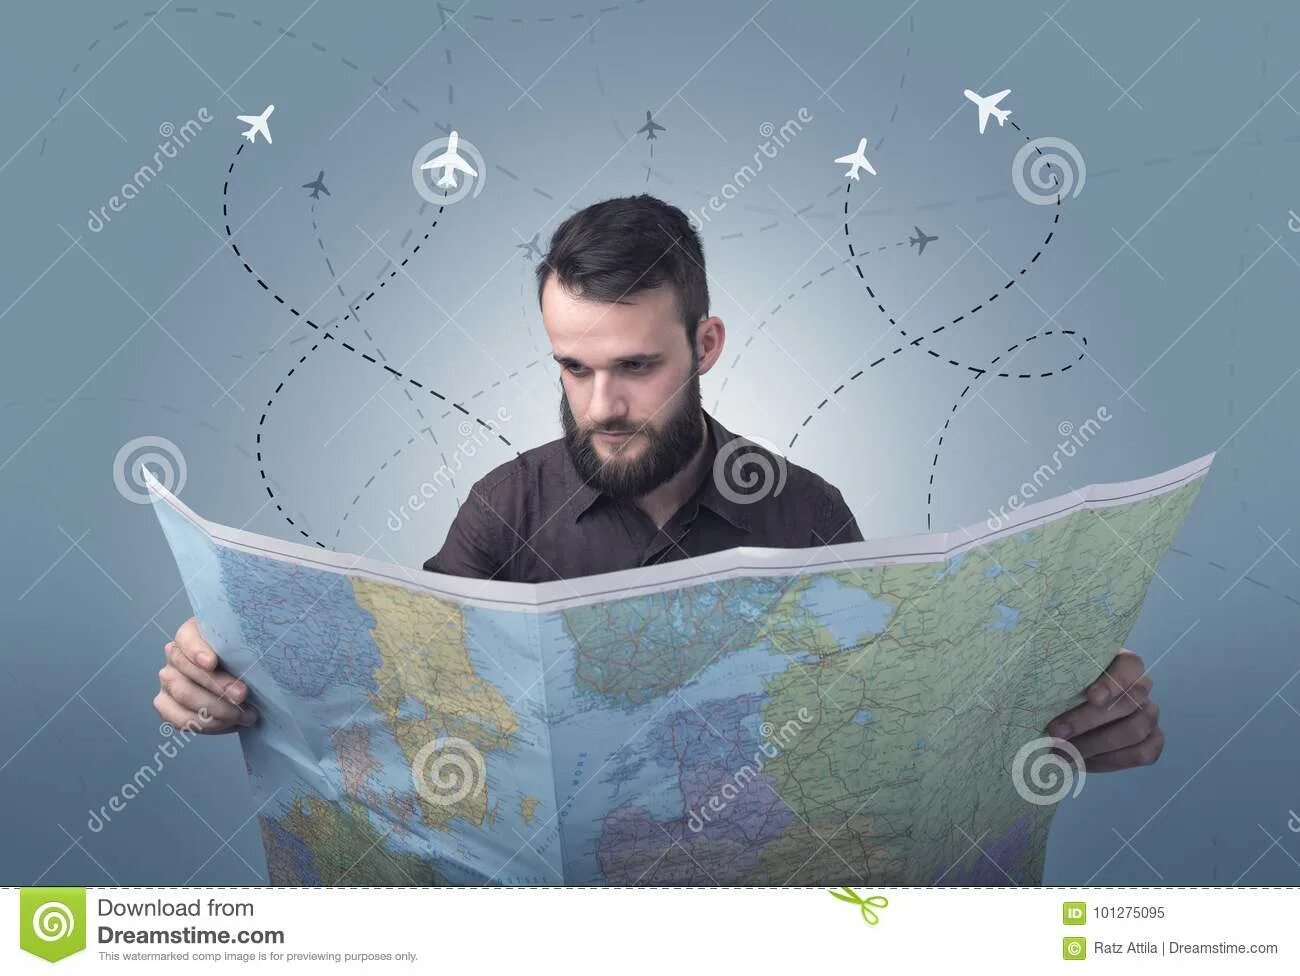 Нужен человек с картой. Человек с картой в руках. Человек держит карту в руках. Человек держитмт карту. Человек с картой местности в руках.